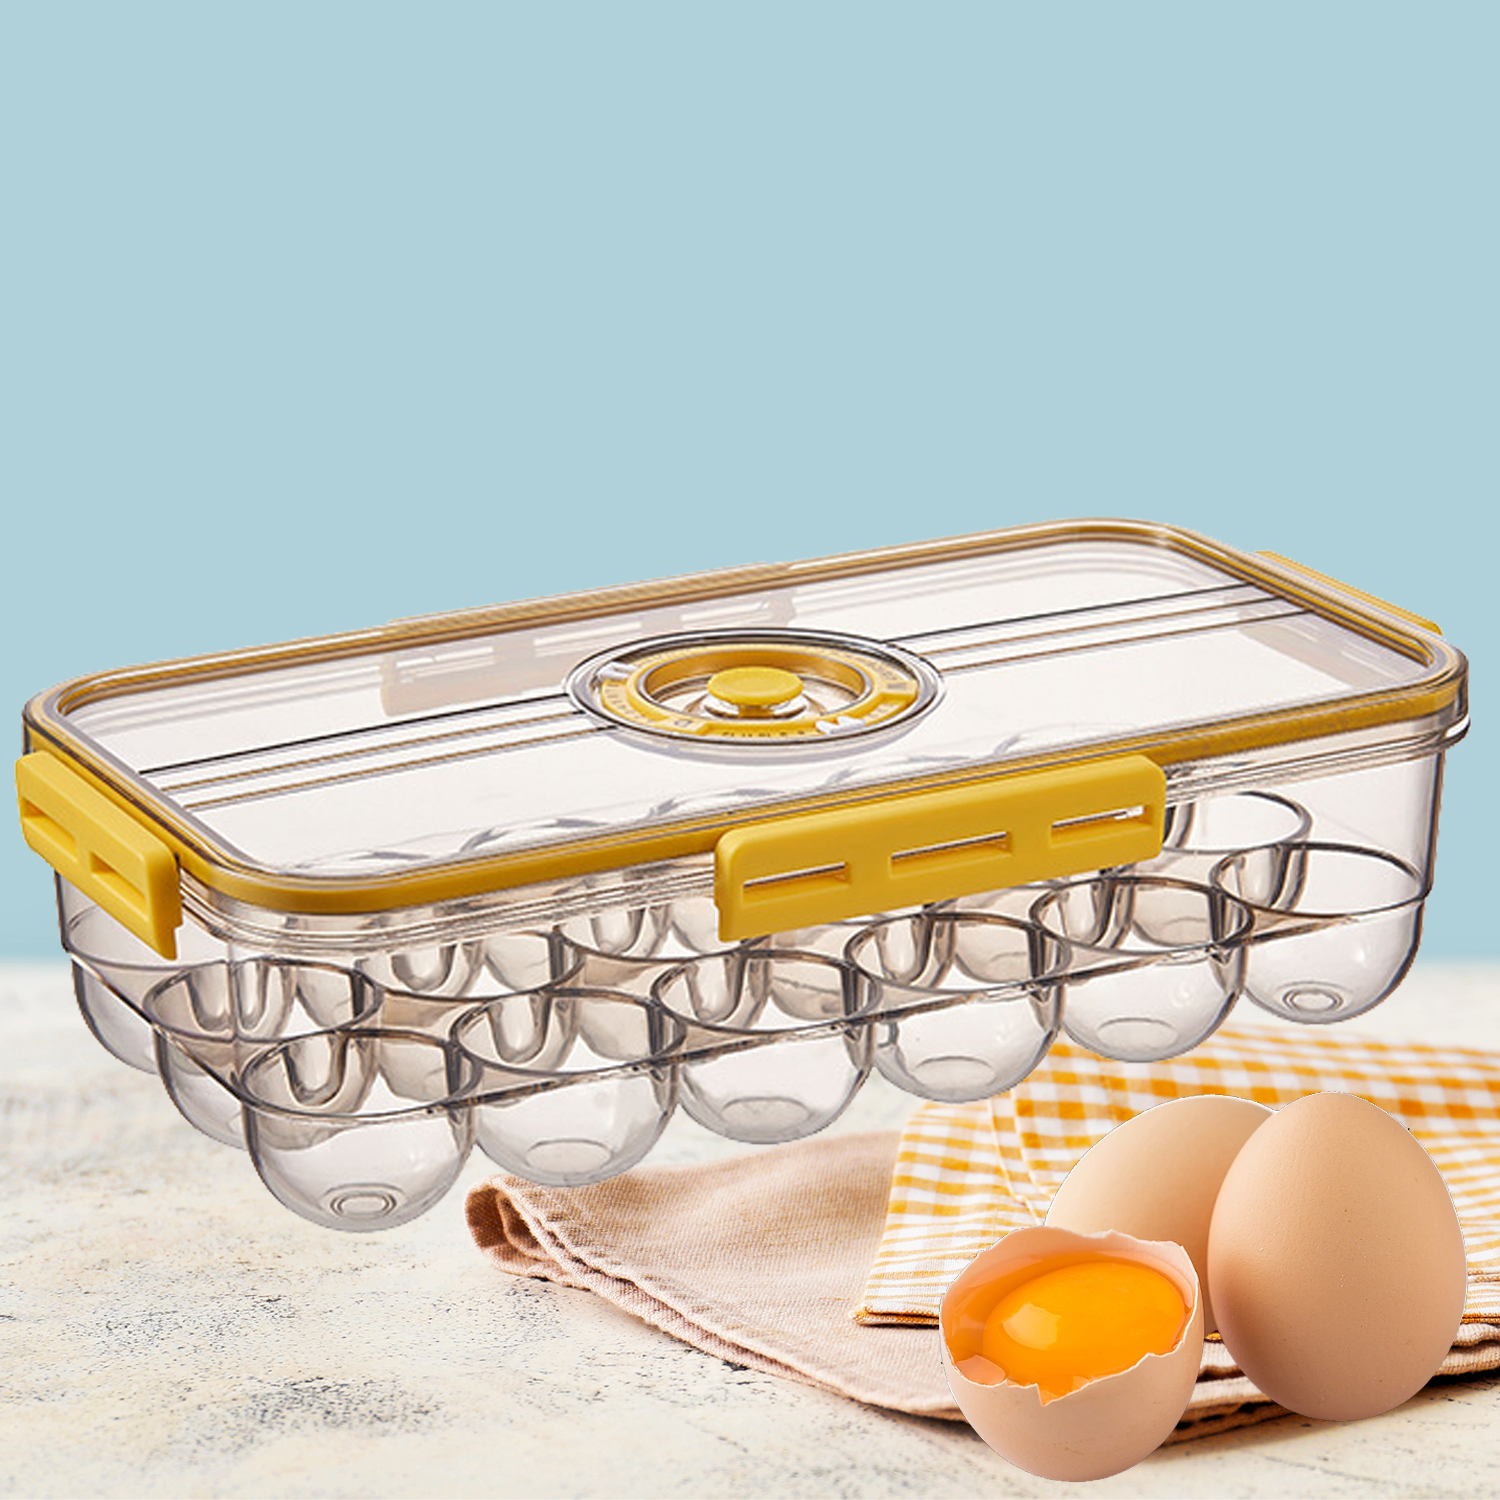 Refrigerador Caja de almacenamiento de huevos Rejillas Caja de sellado al vacío Contenedor de almacenamiento de huevos con temporizador Cocina Organizador de mantenimiento fresco Bandeja de huevos sellada transparente